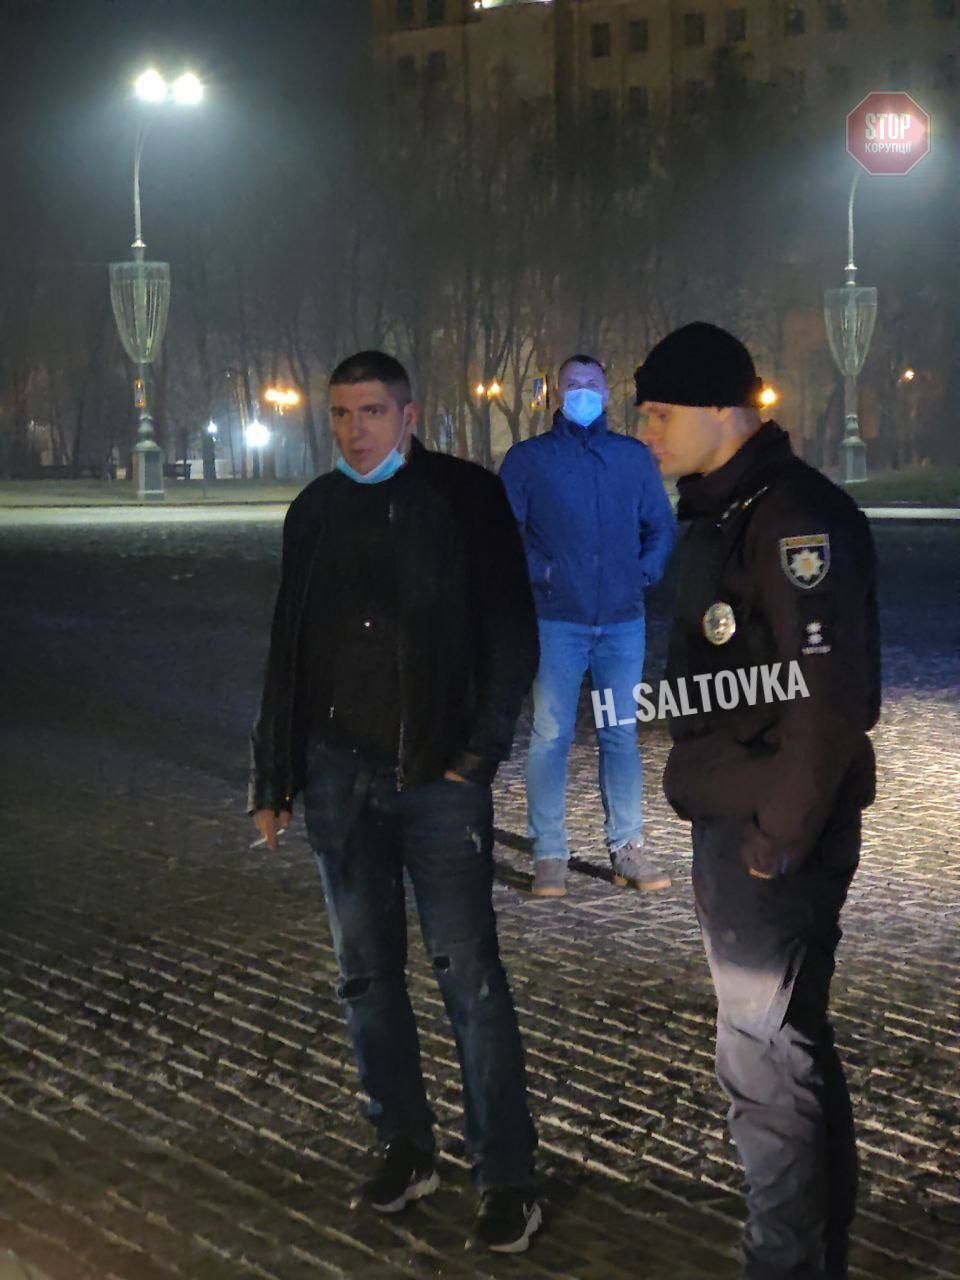  Експодатківець пояснив свої дії необхідною самообороною Фото: ХС| Харків